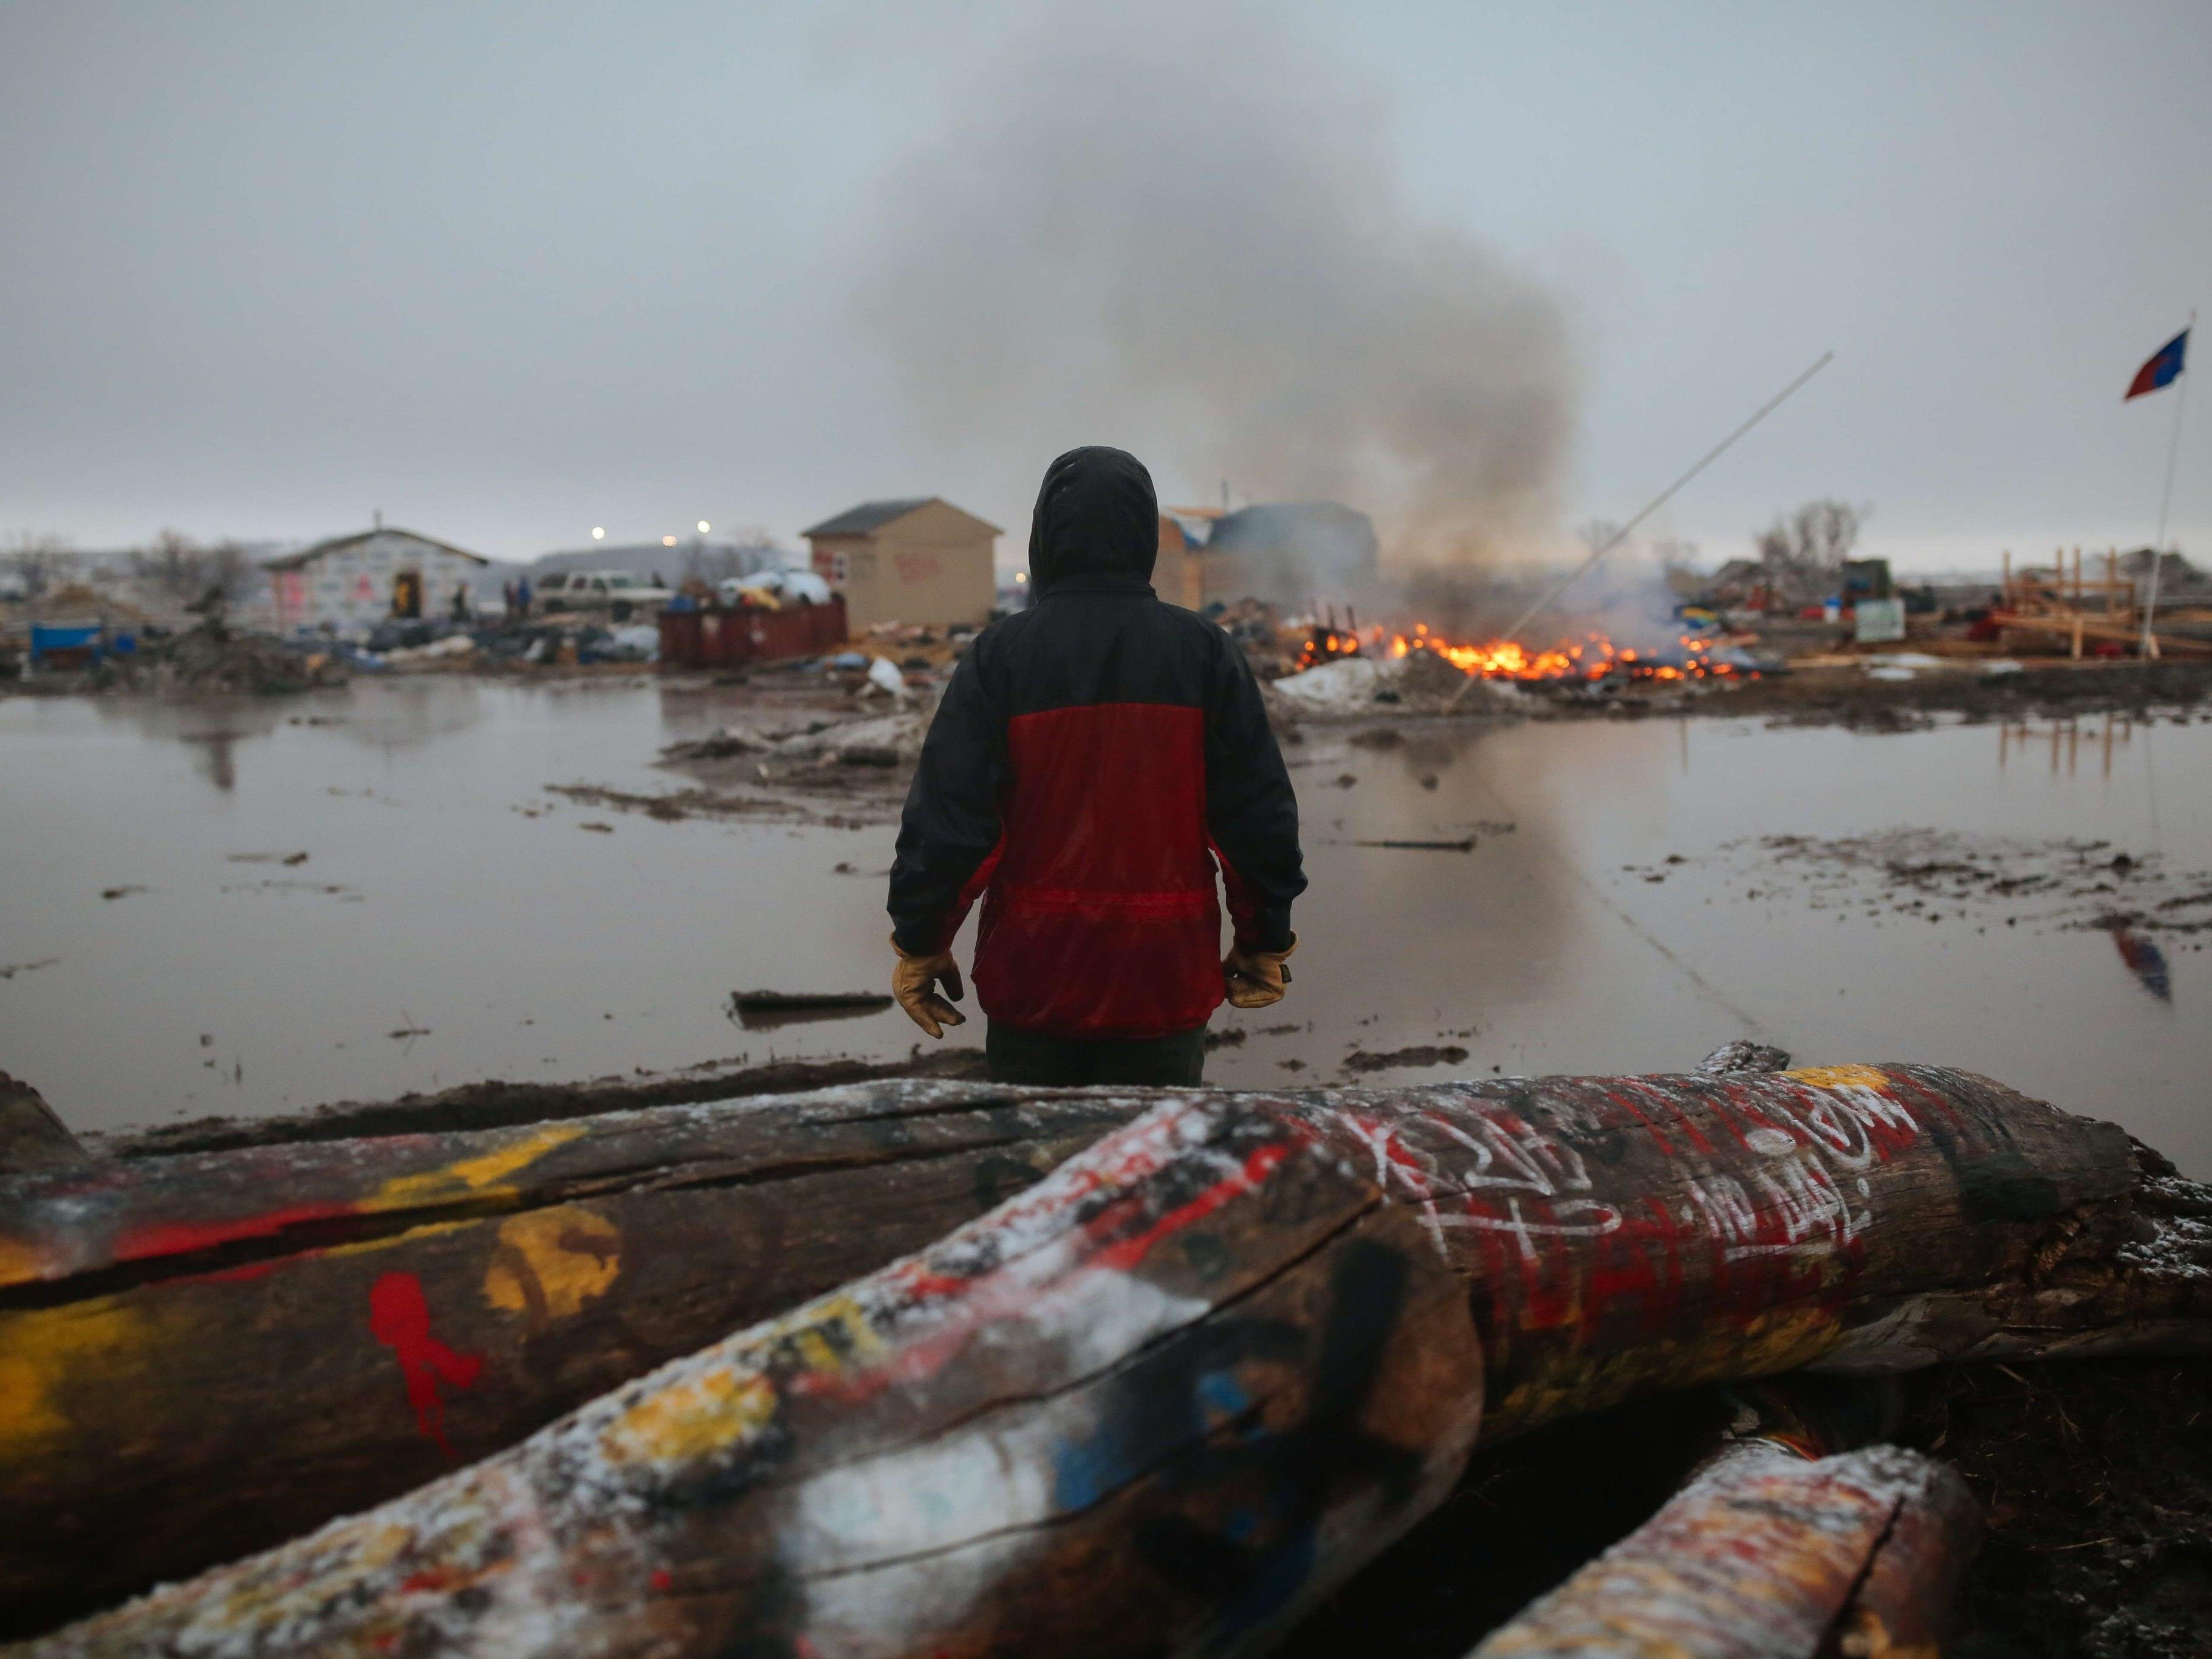 Die Bewohner eines Protestcamps gegen einen geplanten Pipelinebau in North Dakota setzten das Camp in Brand, bevor die von örtlichen Sicherheitkräften geräumt werden konnten.